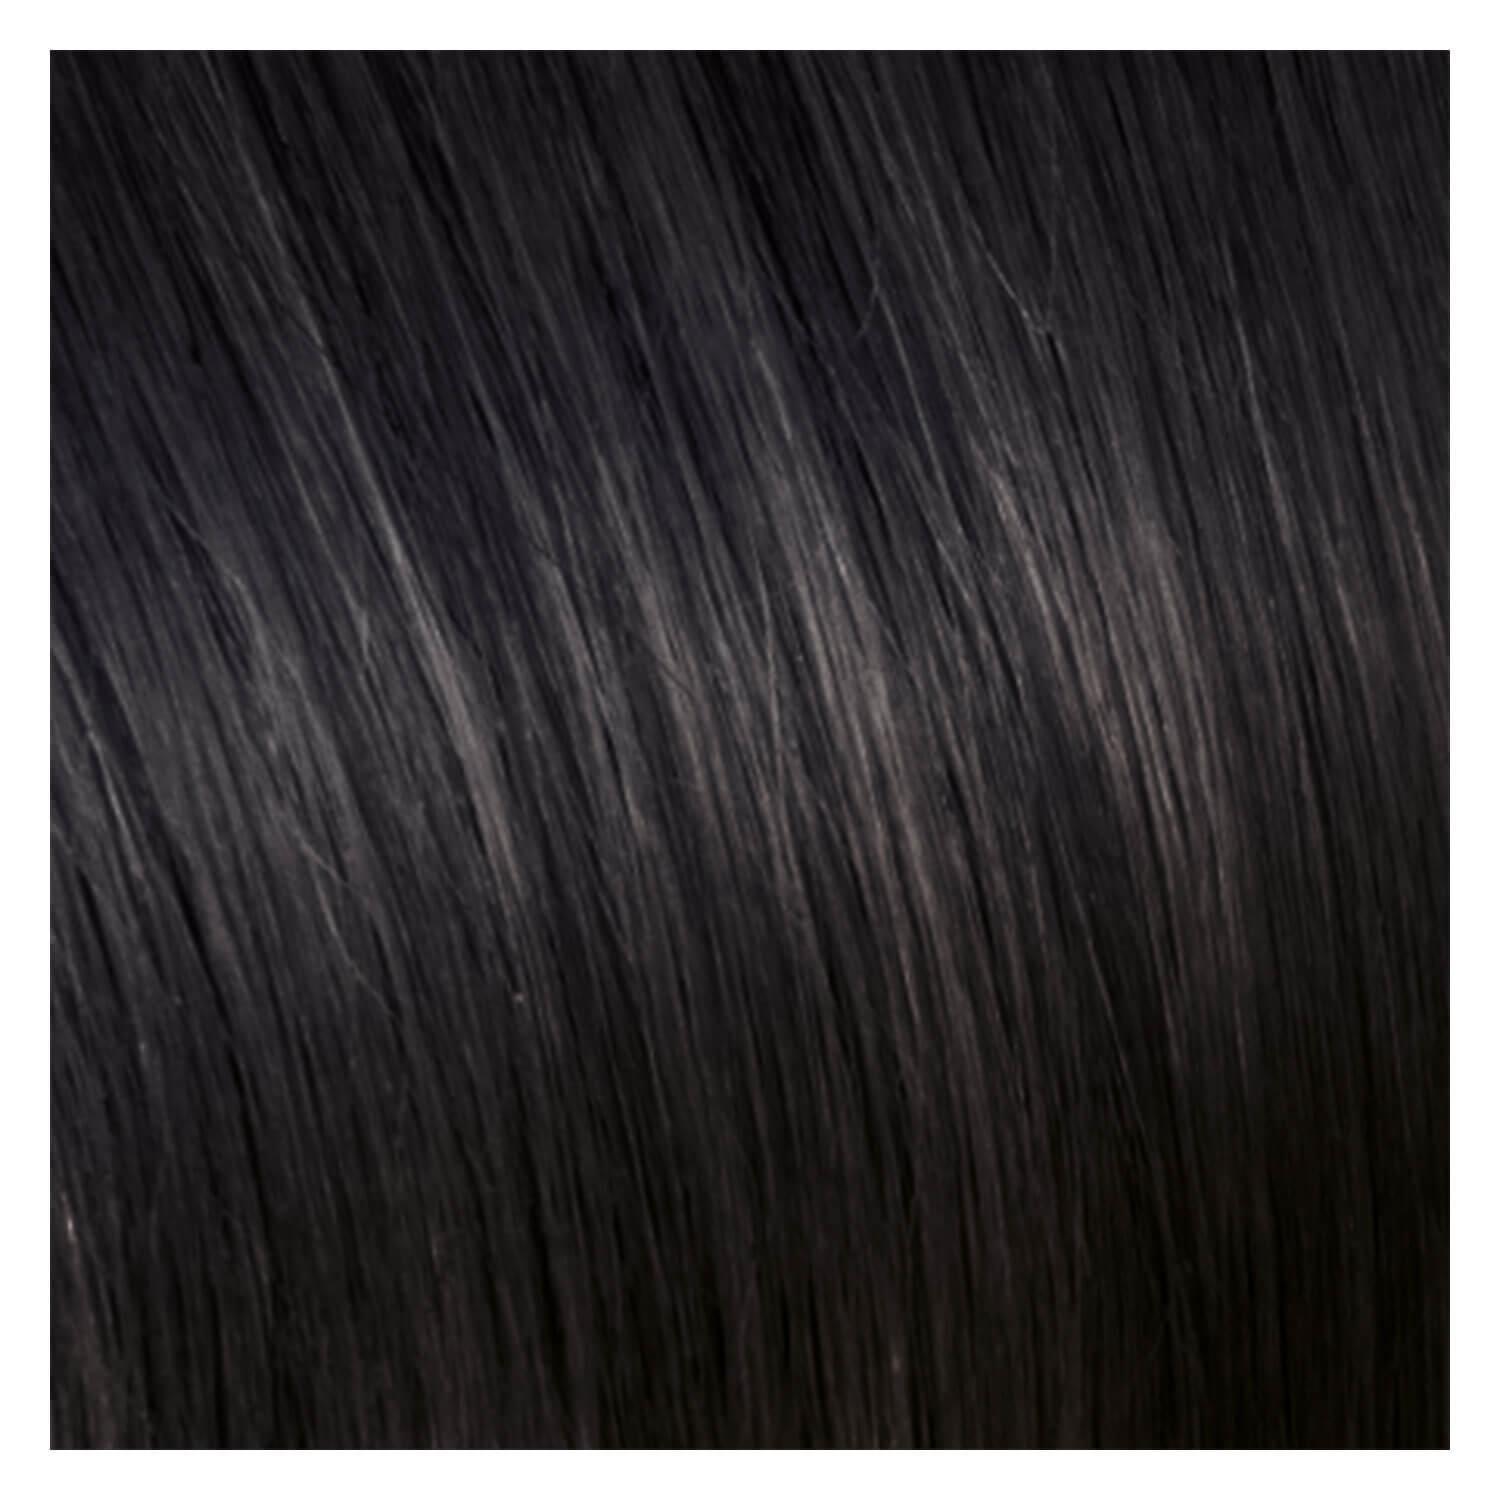 SHE Bonding-System Hair Extensions Straight - 2 Dunkles Kastanienbraun 65/70cm